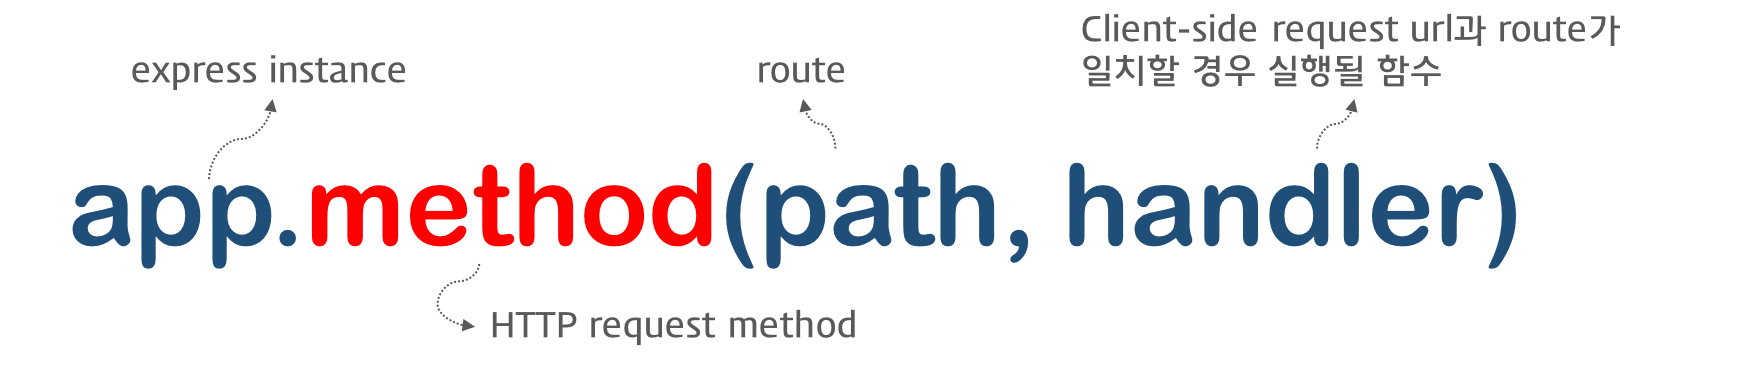 define route